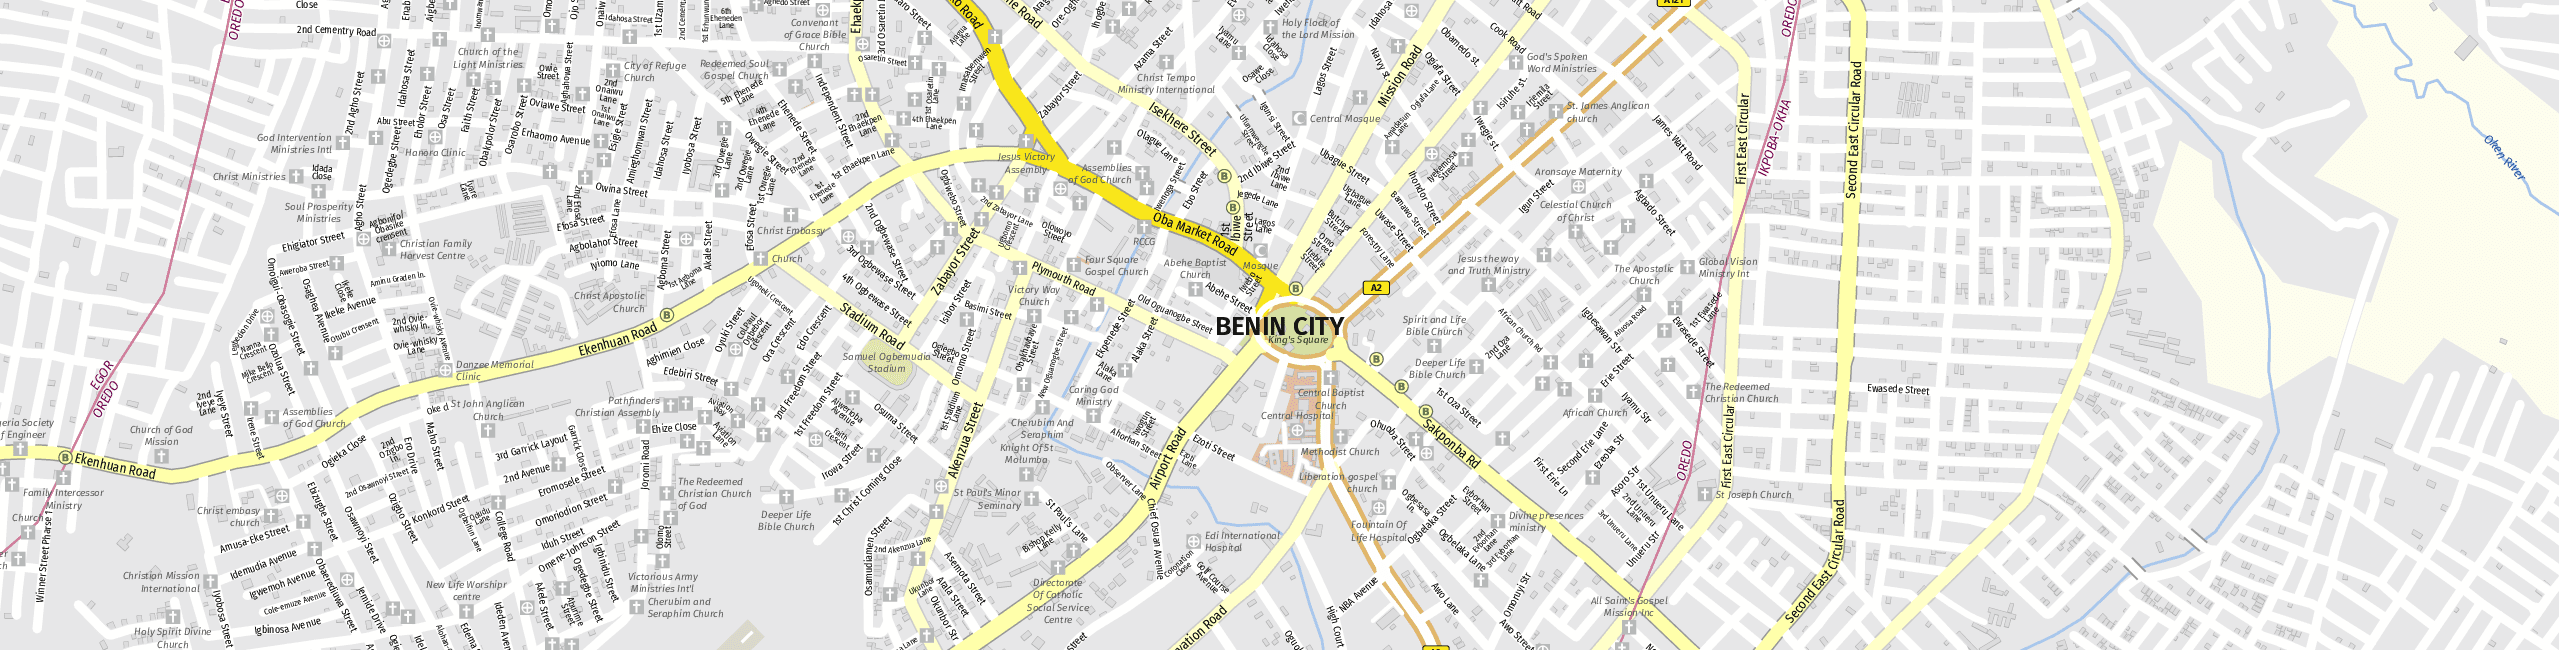 Stadtplan Benin City zum Downloaden.